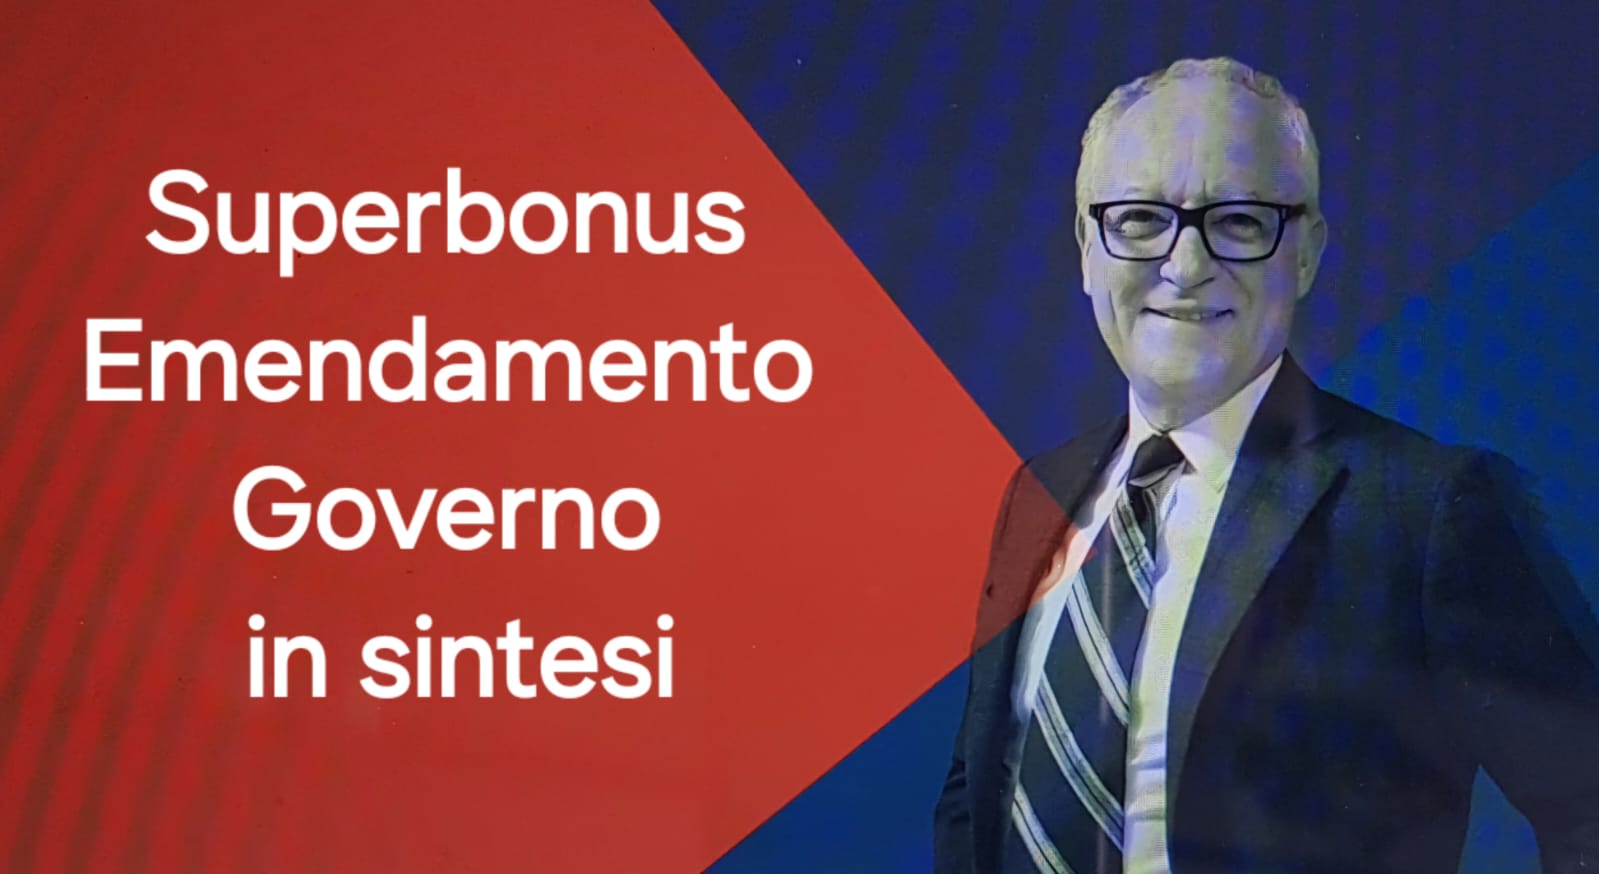 Superbonus, ultime novità dalla conversione del dl 39. Emendamento del Governo con nuova stretta per banche e imprese.